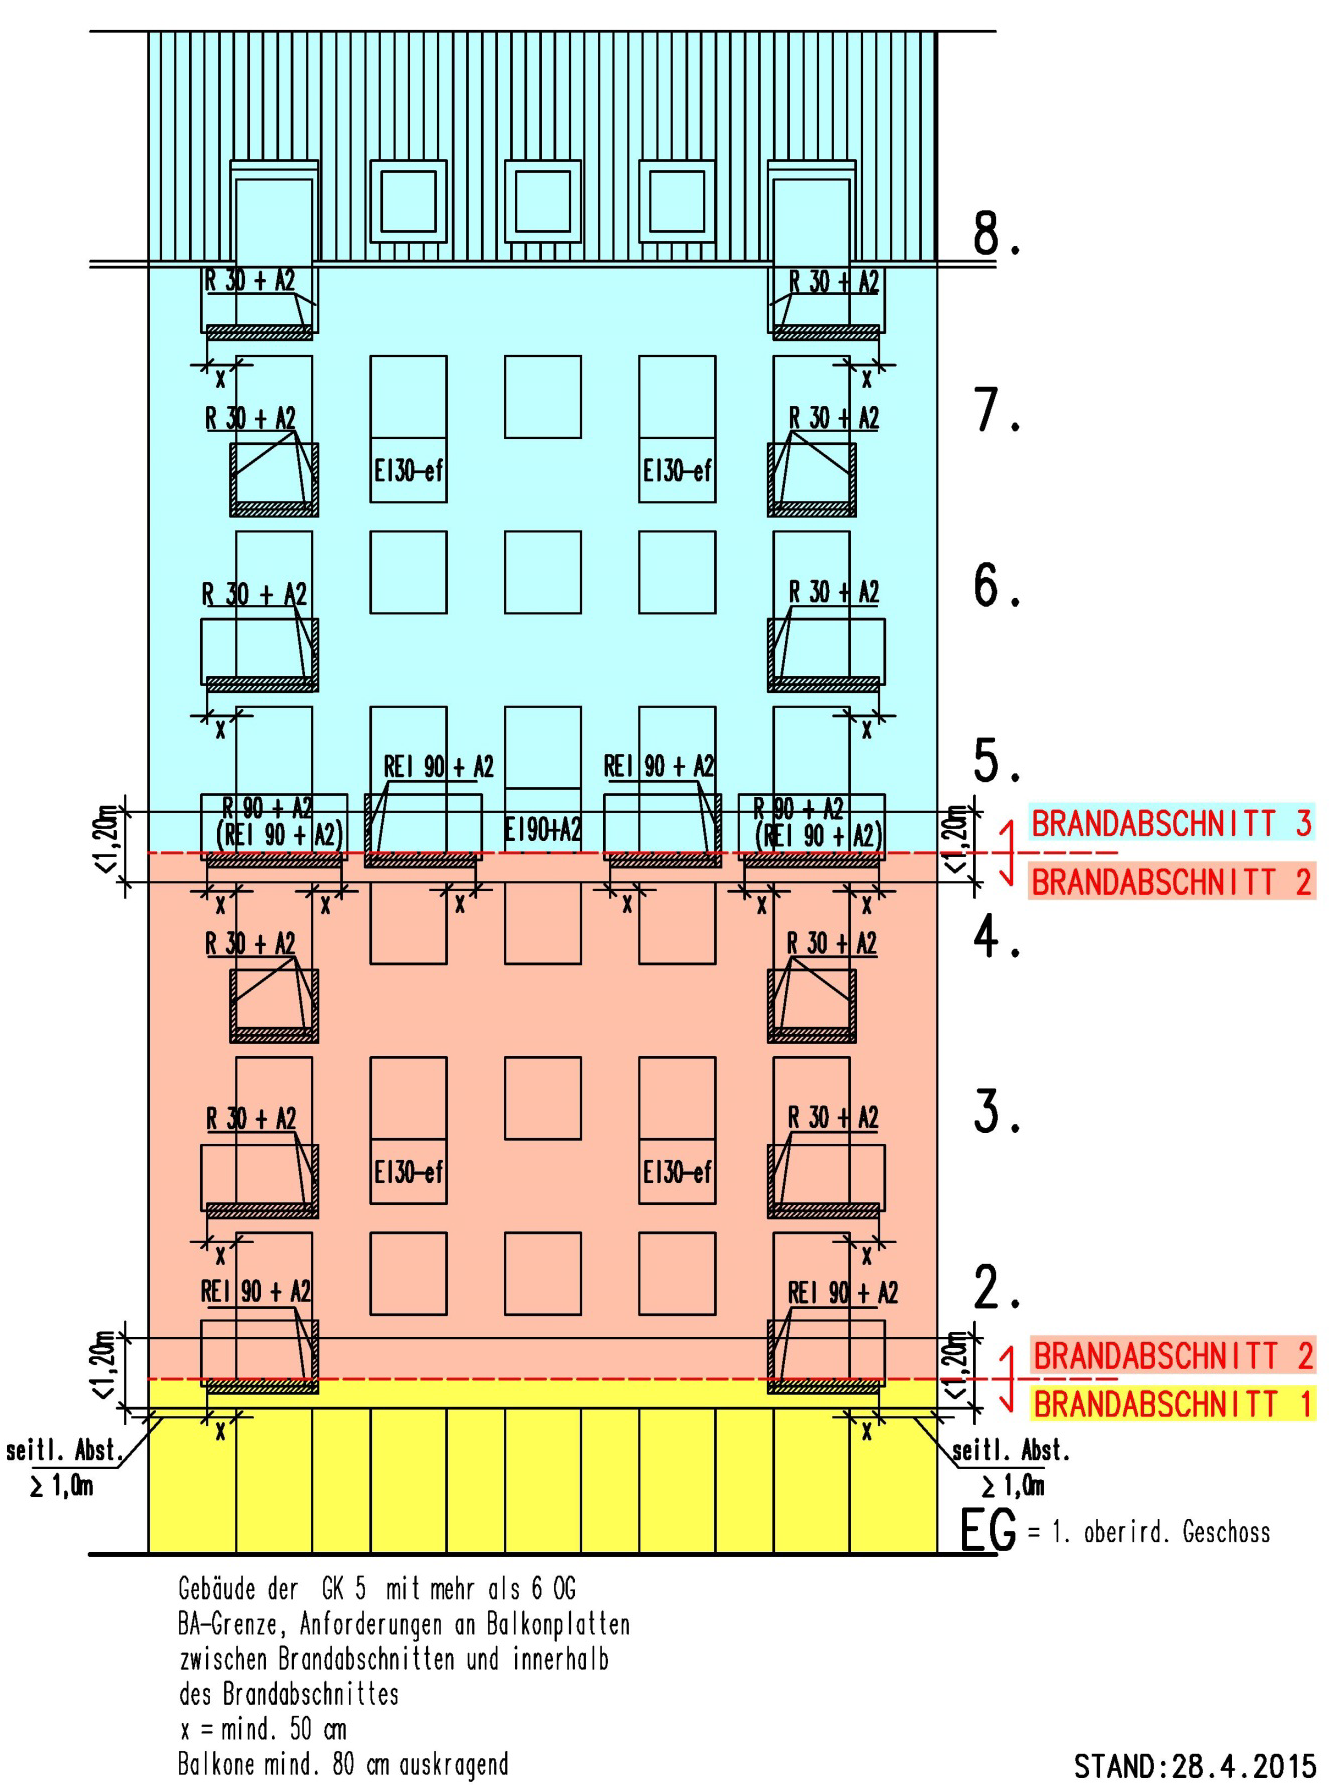 MA37-395009-2015_Erläuterungen zur OIB-Richtlinie 2, Ausgabe 2015 Seite 15/39 Gebäude der GK 5 mit mehr als 6 oberirdischen Geschoßen (Hinweis: für Wohngebäude nicht zutreffend) Die folgende